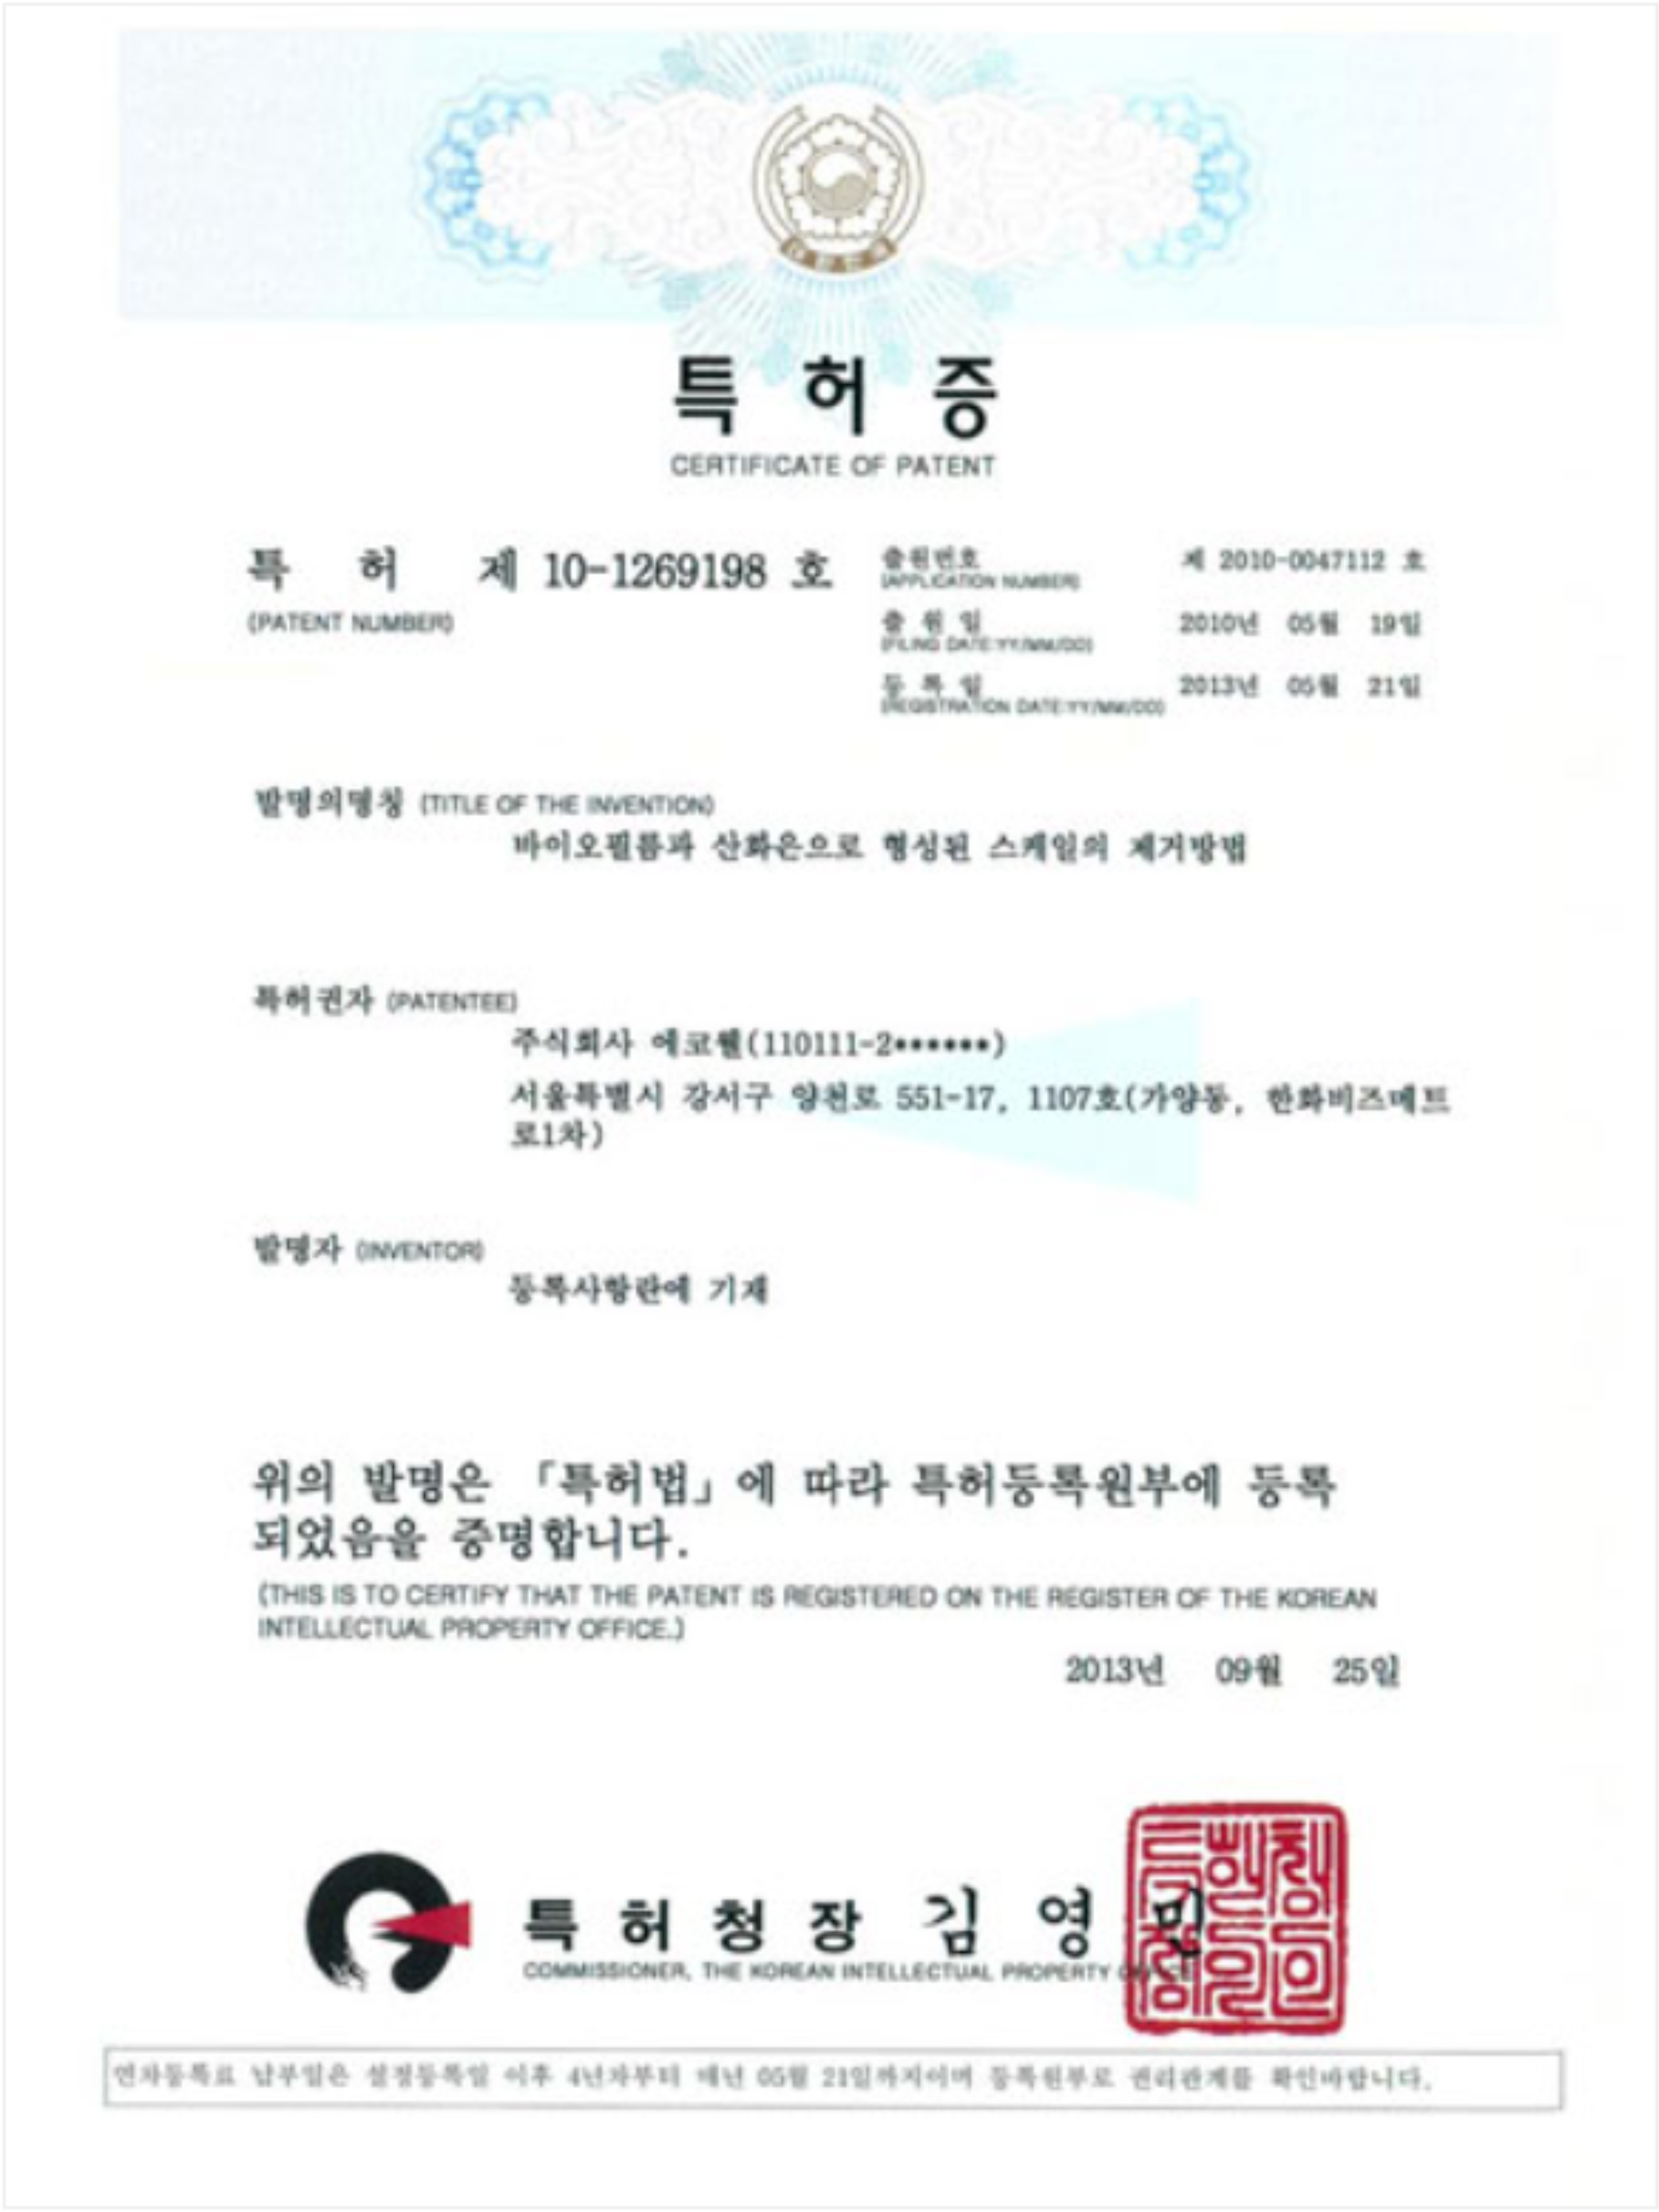 Certificado de patente para el método de eliminación de incrustaciones mediante biopelícula y óxido de plata